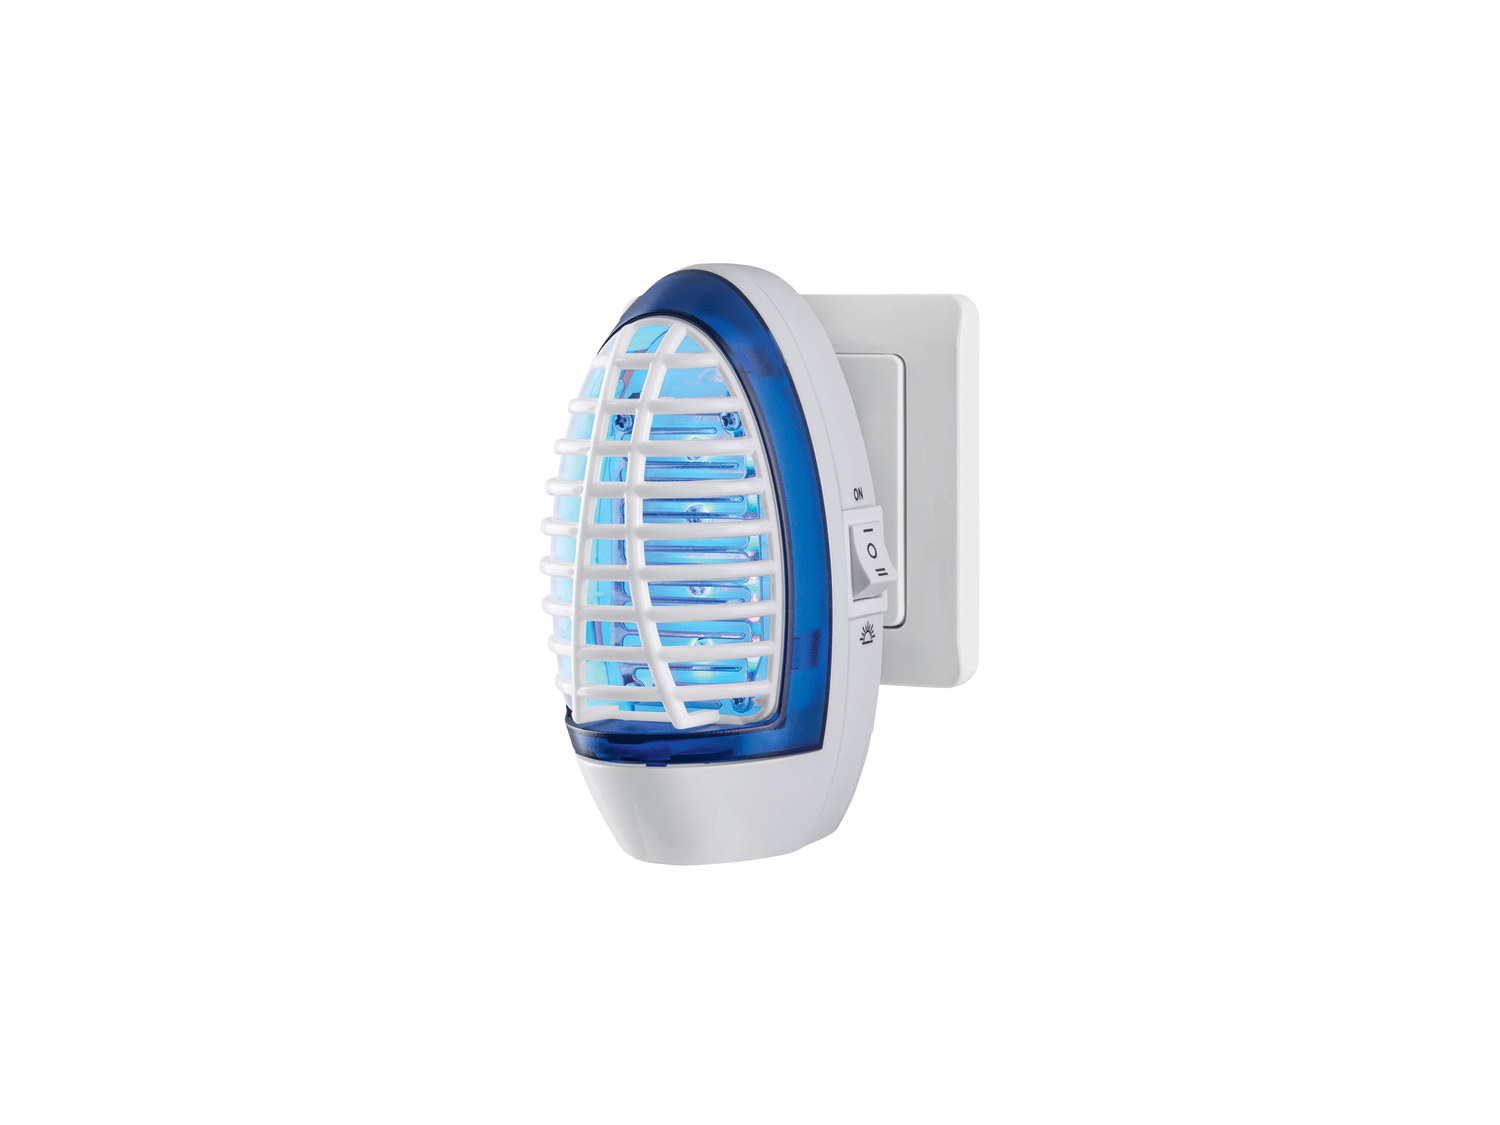 Lampada insetticida LED da presa Tuv-sud-gs, prezzo 5.99 € 
- Luce UVA blu che ...